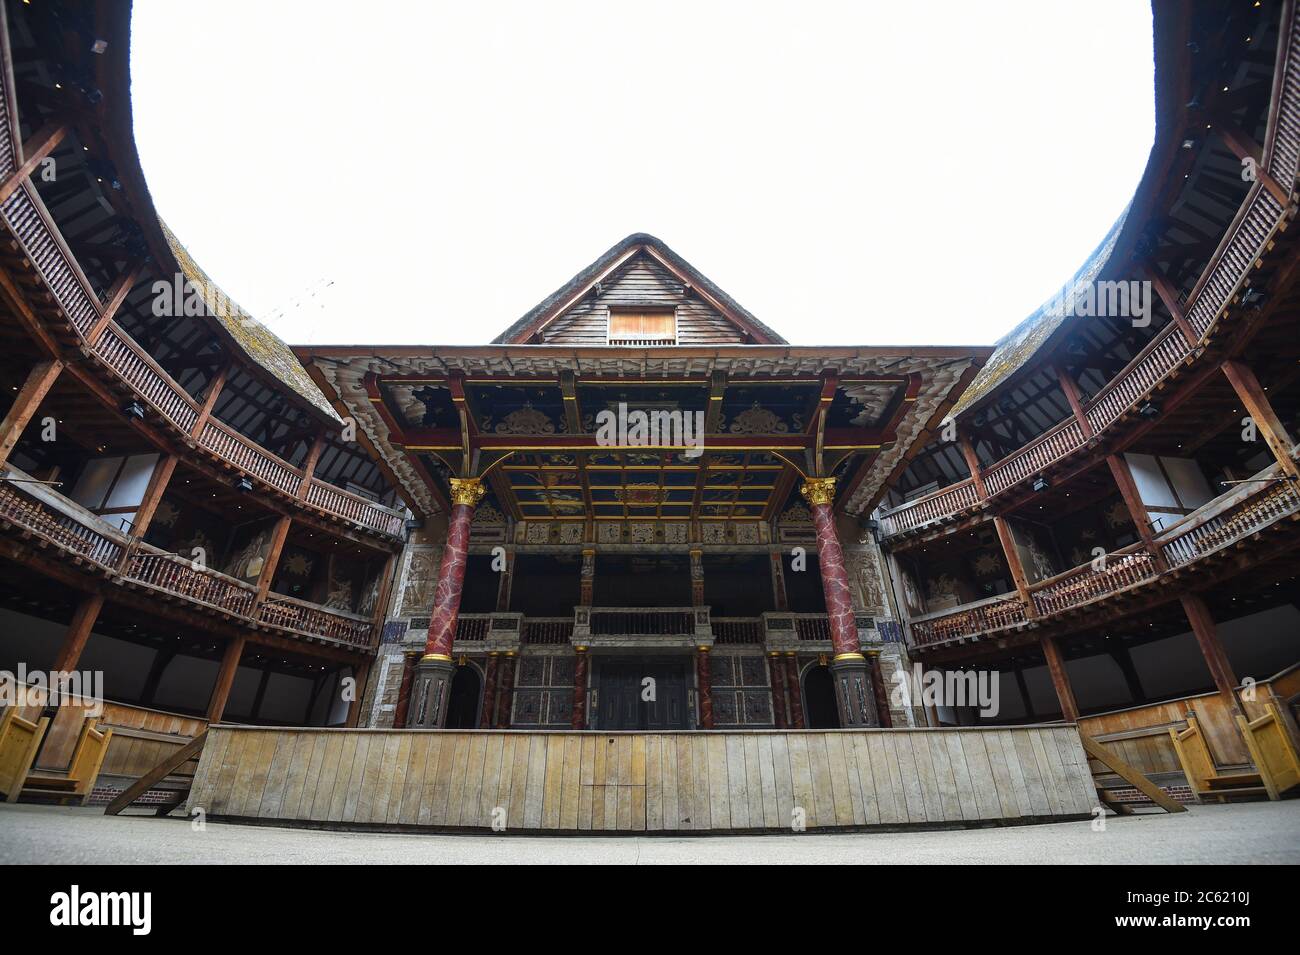 Ein Blick auf Shakespeares Globe, der leer steht, nachdem die Regierung ein £1.57 Milliarden Kunst-Unterstützungspaket angekündigt hatte. Stockfoto